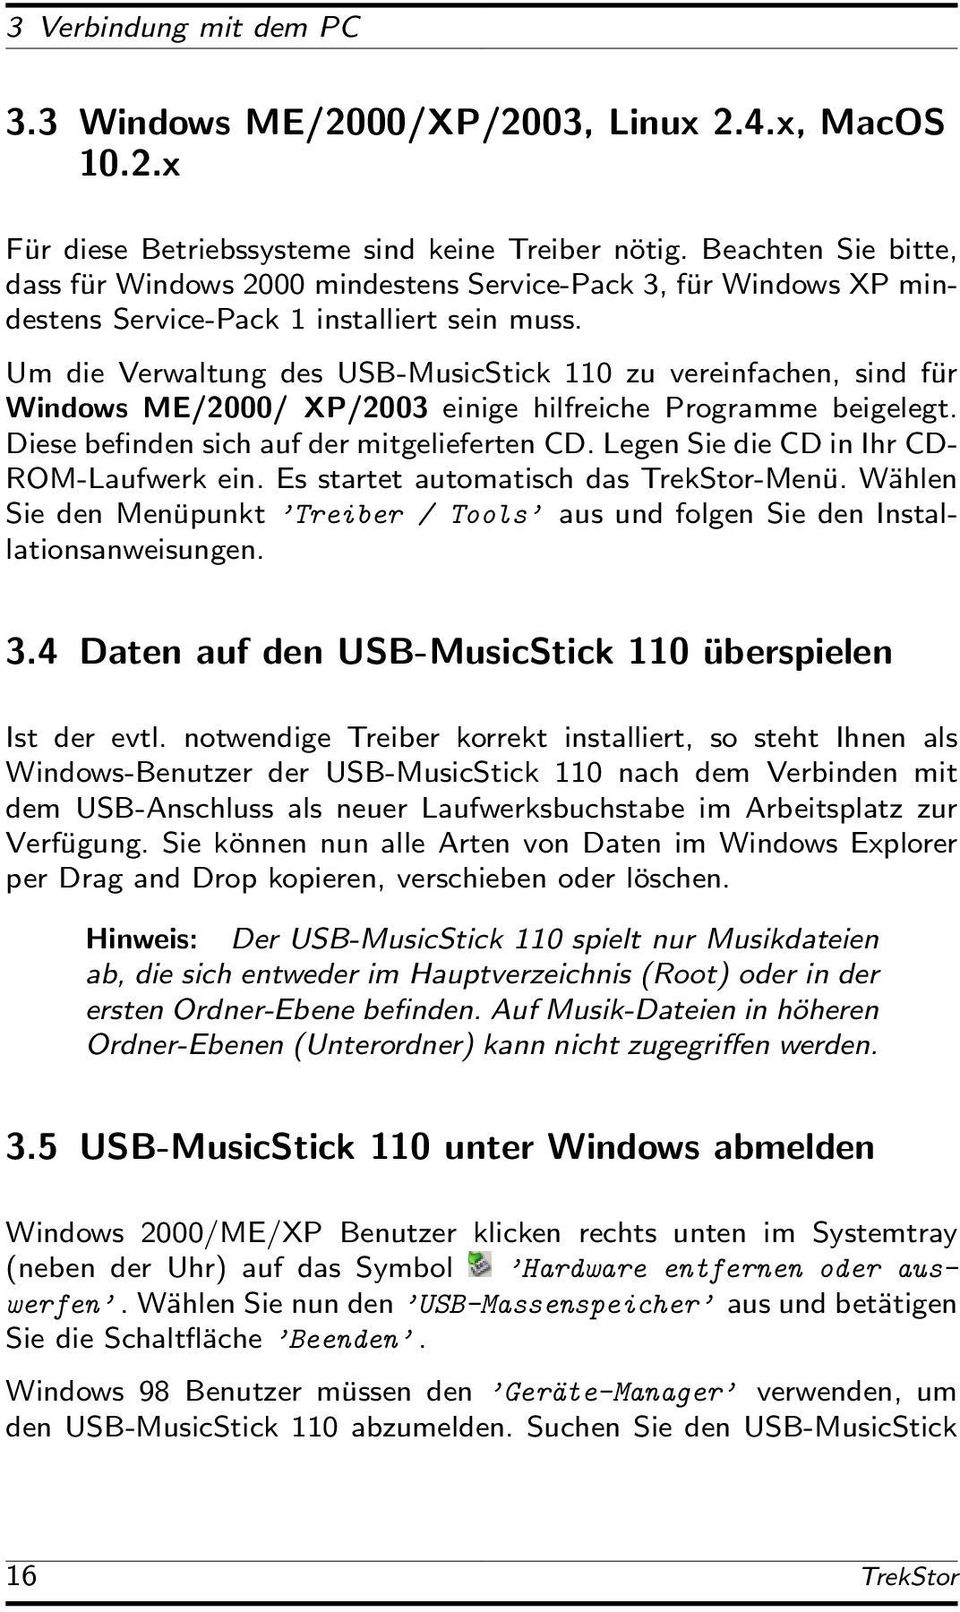 Um die Verwaltung des USB-MusicStick 110 zu vereinfachen, sind für Windows ME/2000/ XP/2003 einige hilfreiche Programme beigelegt. Diese befinden sich auf der mitgelieferten CD.